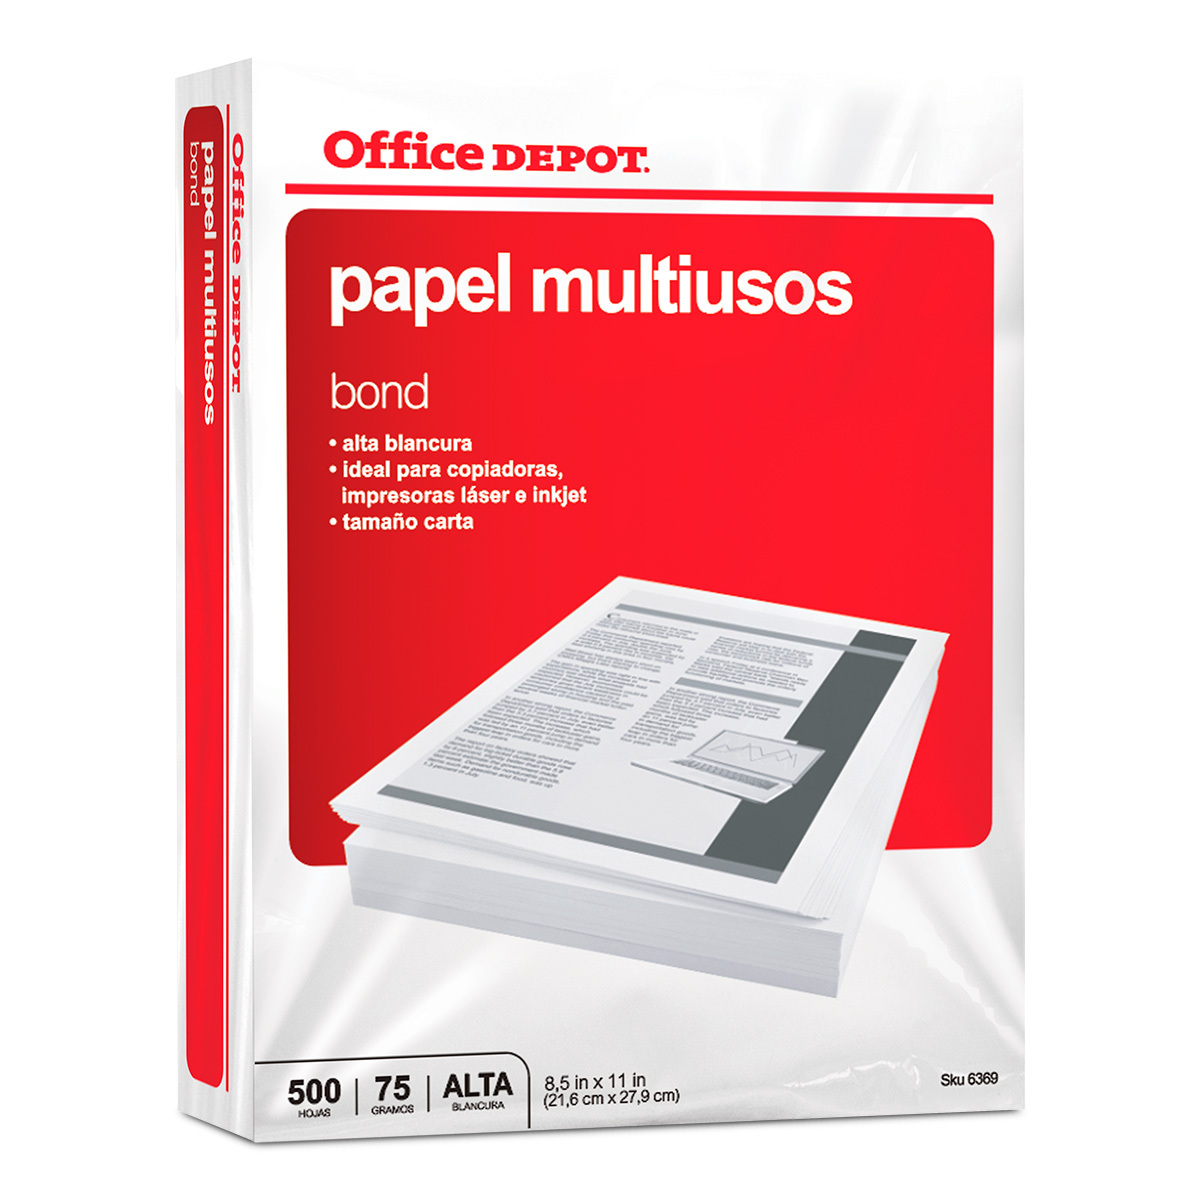 Permanecer de pié Magnético Interpretación Papel Bond Carta Office Depot Paquete 500 hojas blancas | Office Depot  Mexico